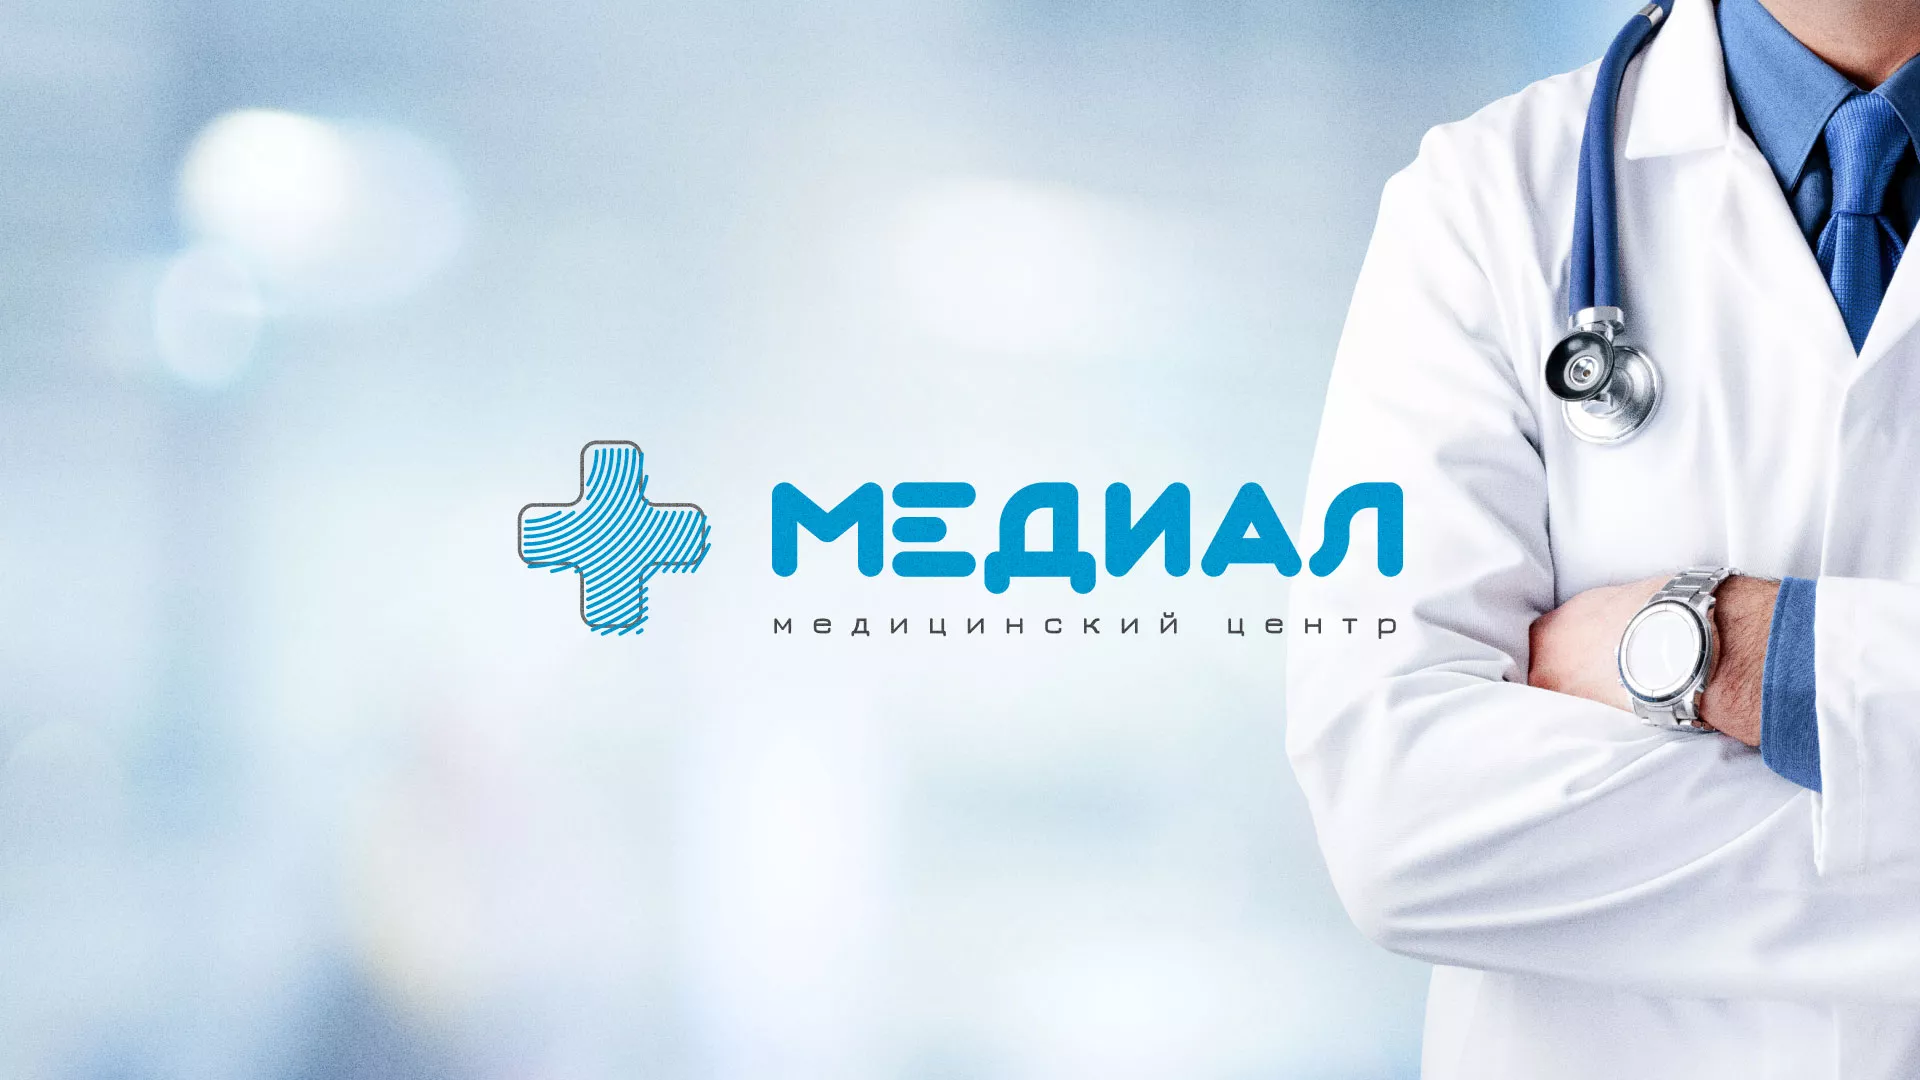 Создание сайта для медицинского центра «Медиал» в Усинске